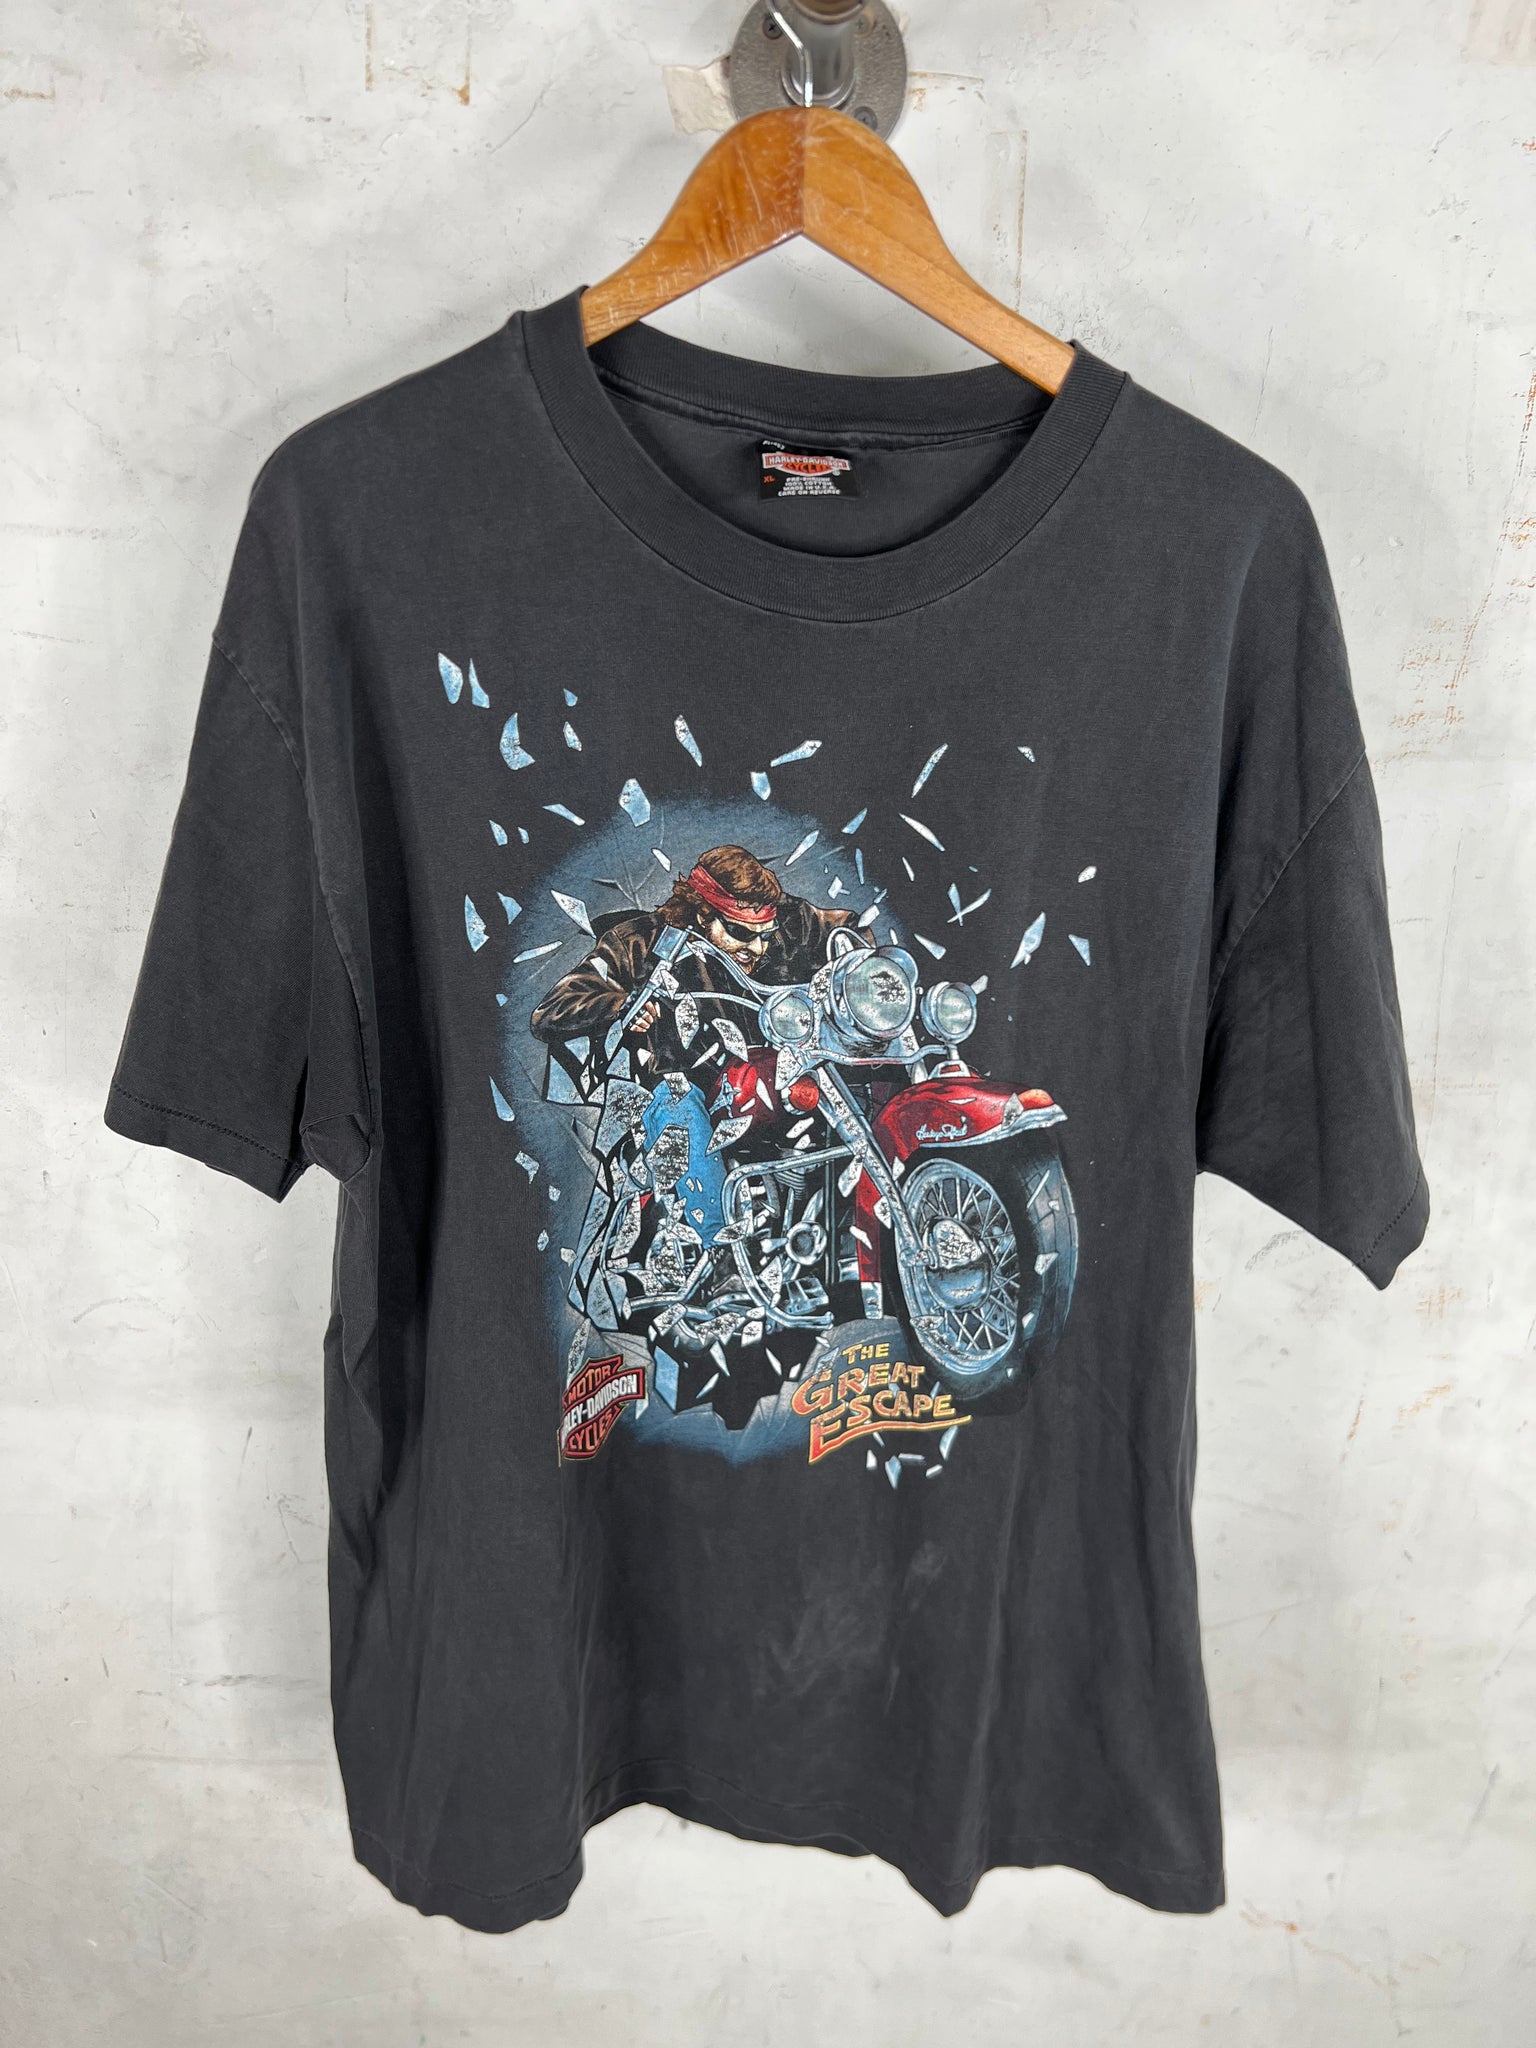 Vintage Harley Davidson Great Escape T-Shirt